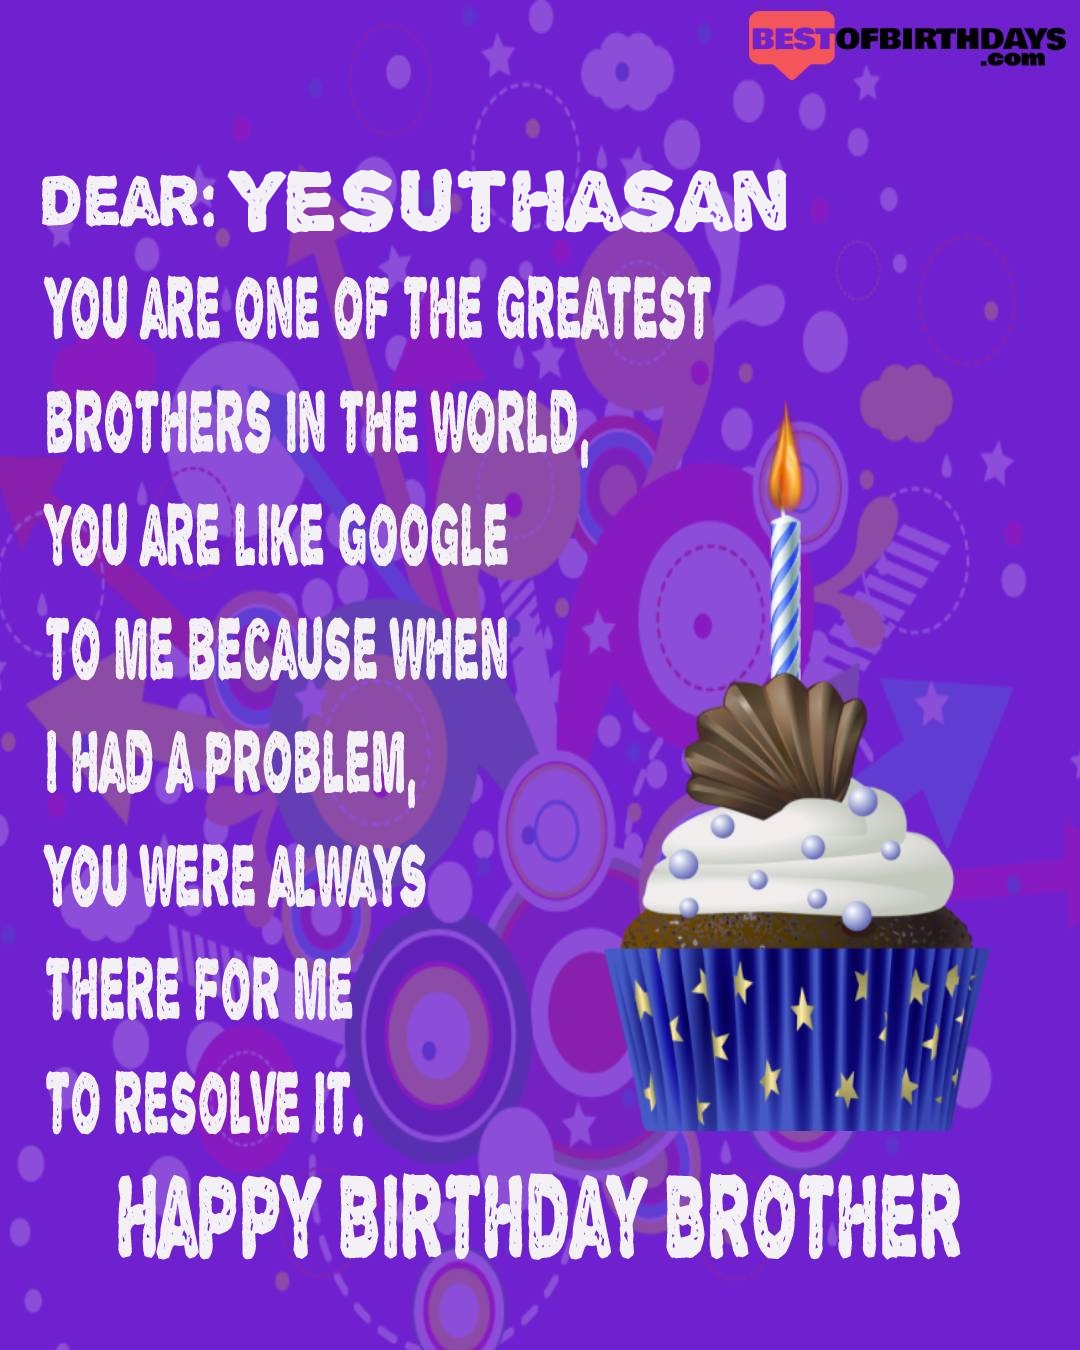 Happy birthday yesuthasan bhai brother bro